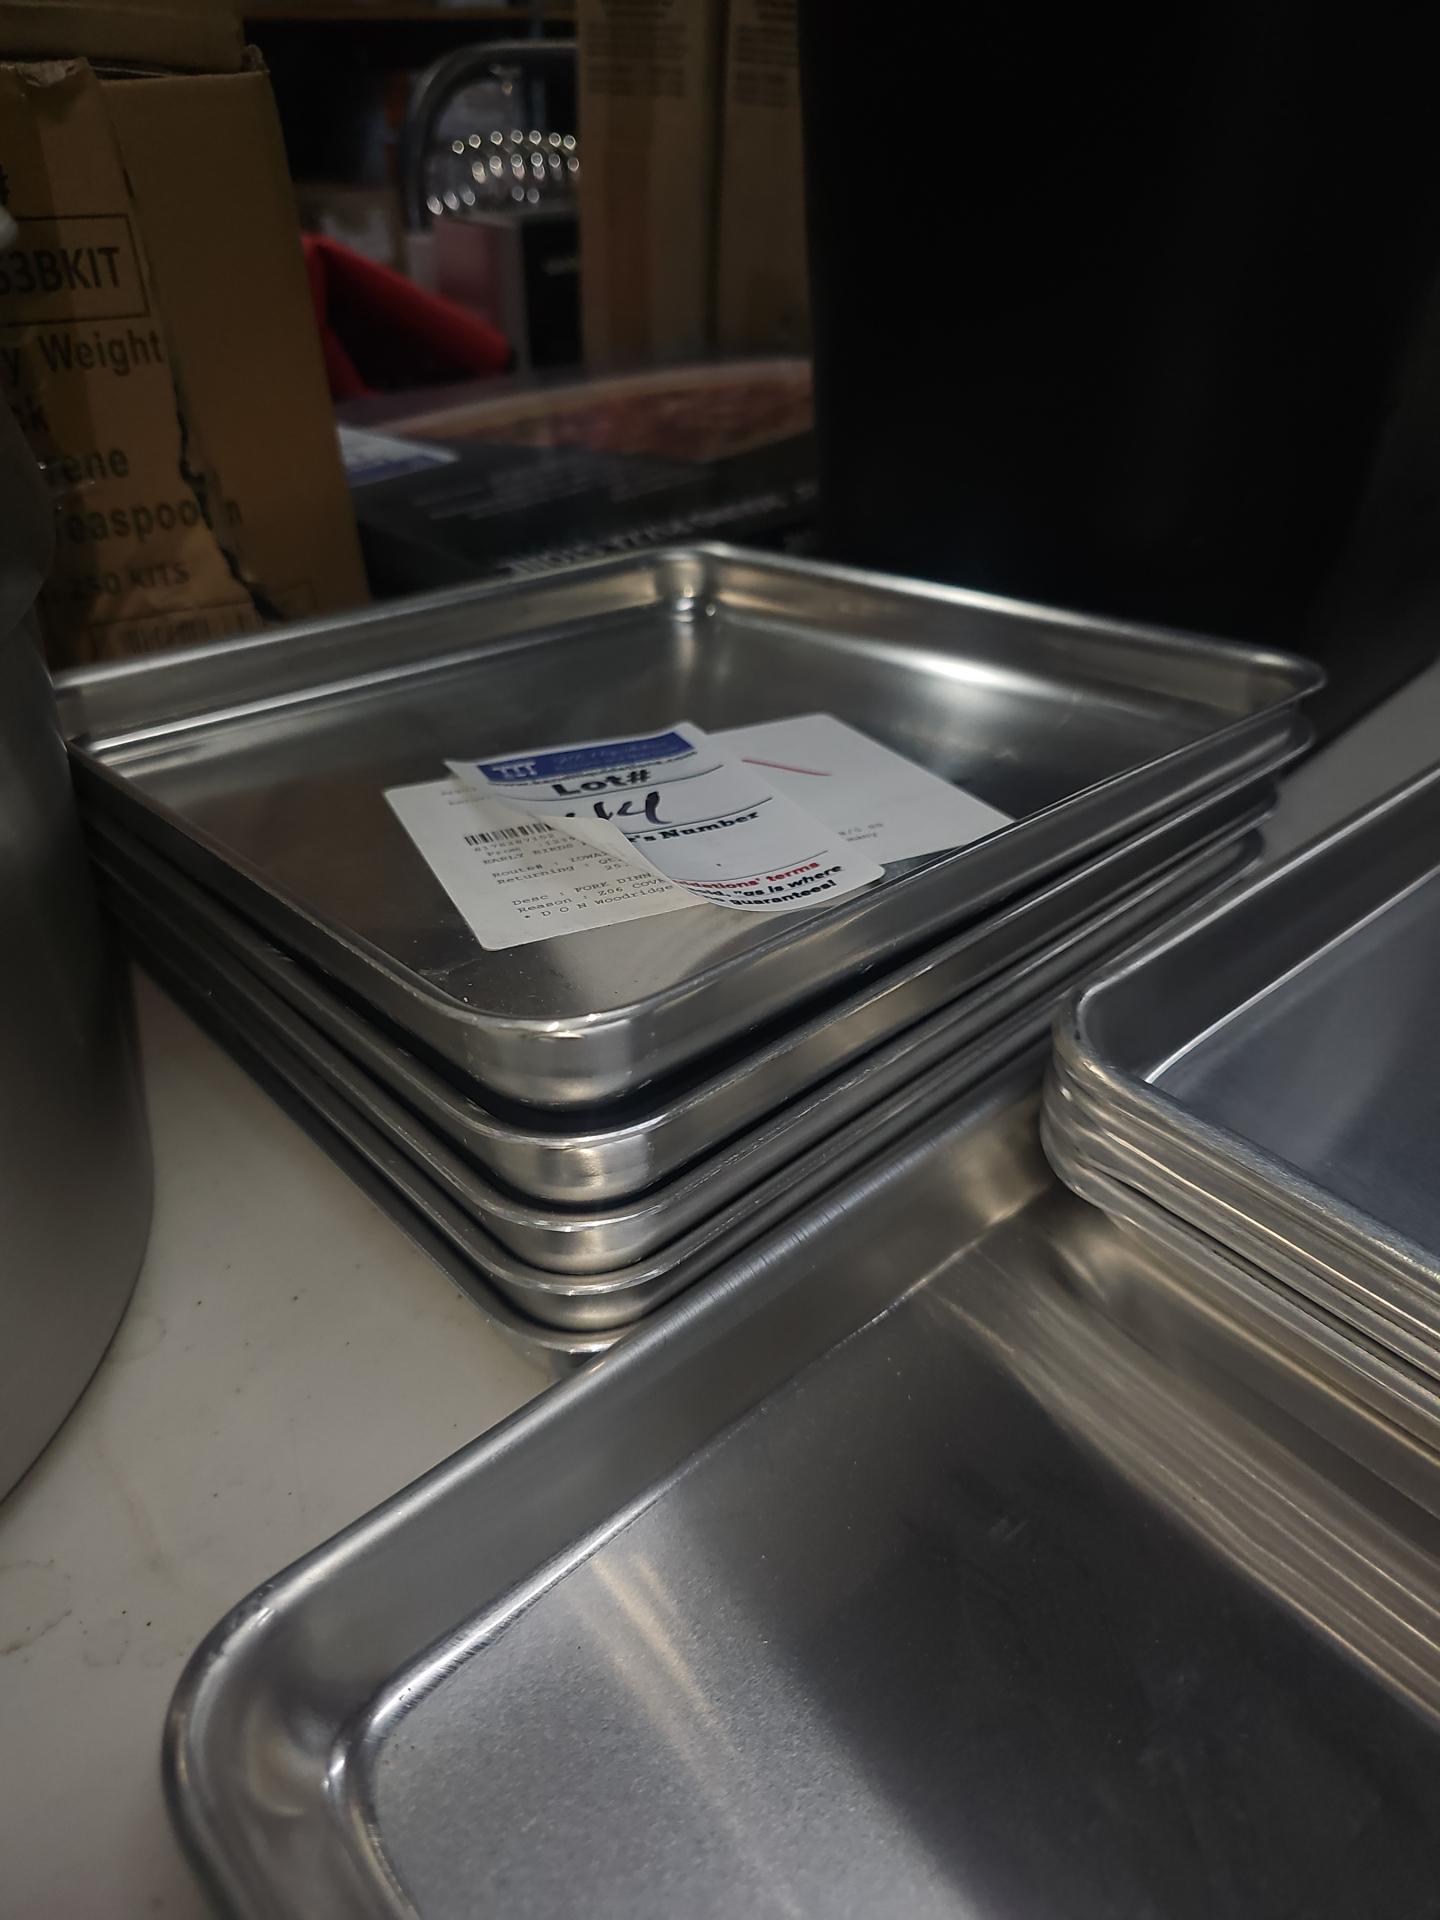 Square 10" x 10" Aluminum pans